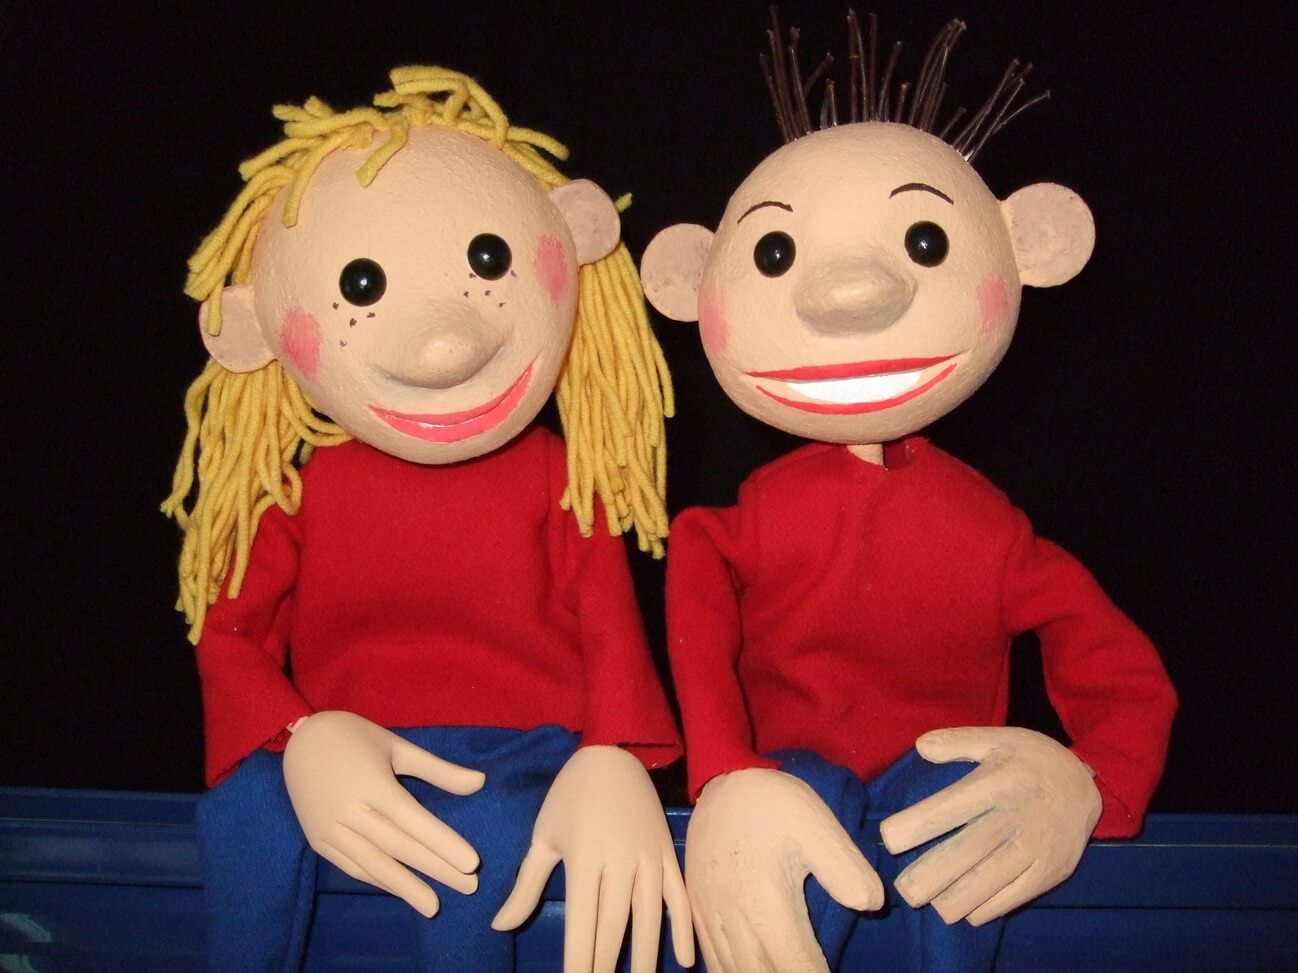 Foto: Foto der beiden Tischfiguren Flummi (Mädchen) und Flo (Junge).Beide haben rote Pullover und blaue Hosen an.